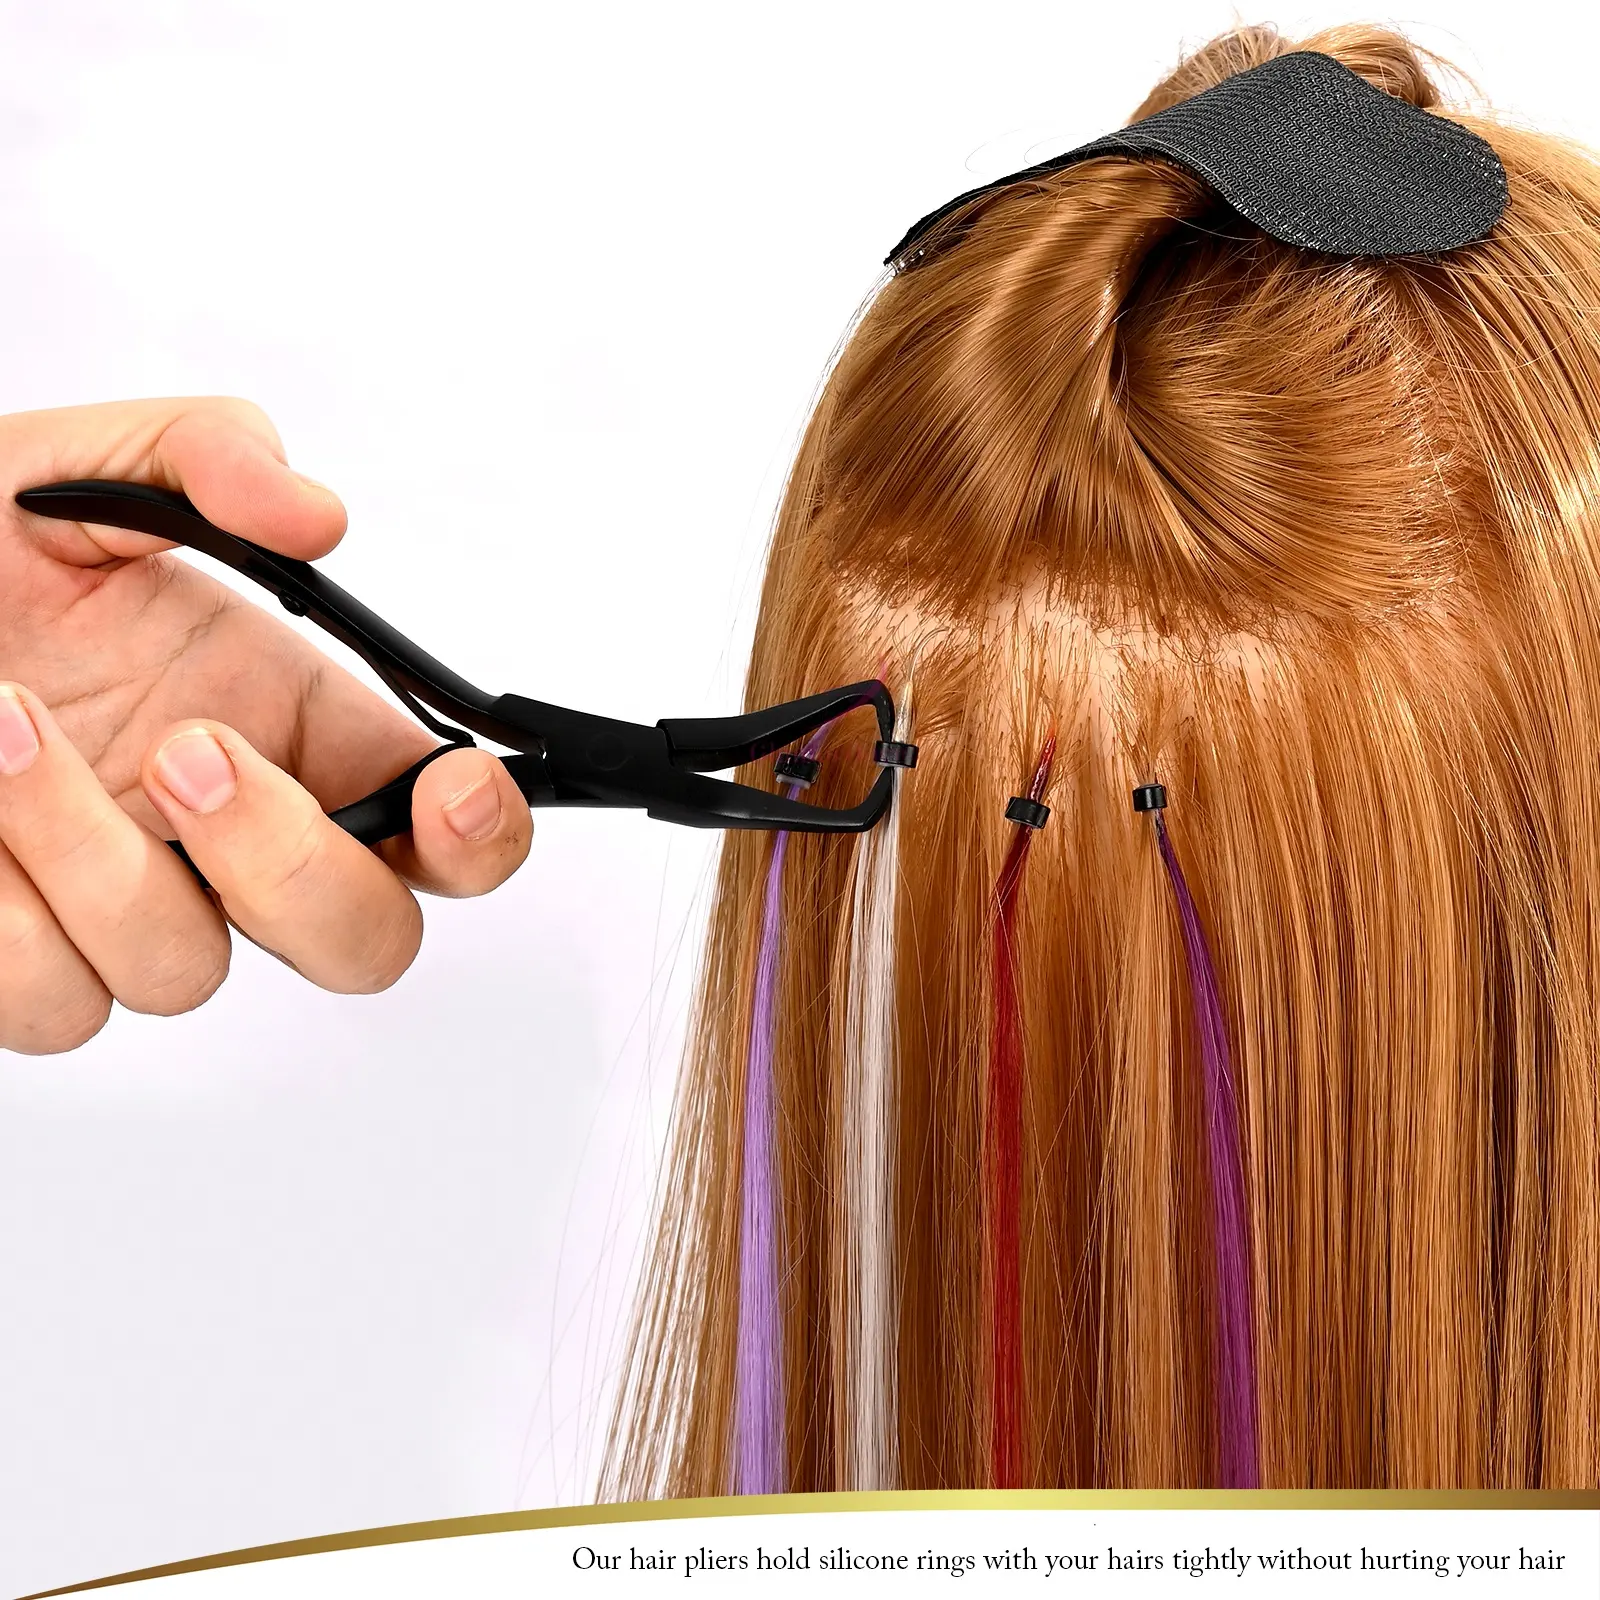 שיער הארכת להסיר פלייר משיכת וו מחט כלי מיקרו סיליקון טבעות חרוז מכשיר כלי ערכות עבור שיער סטיילינג כלים